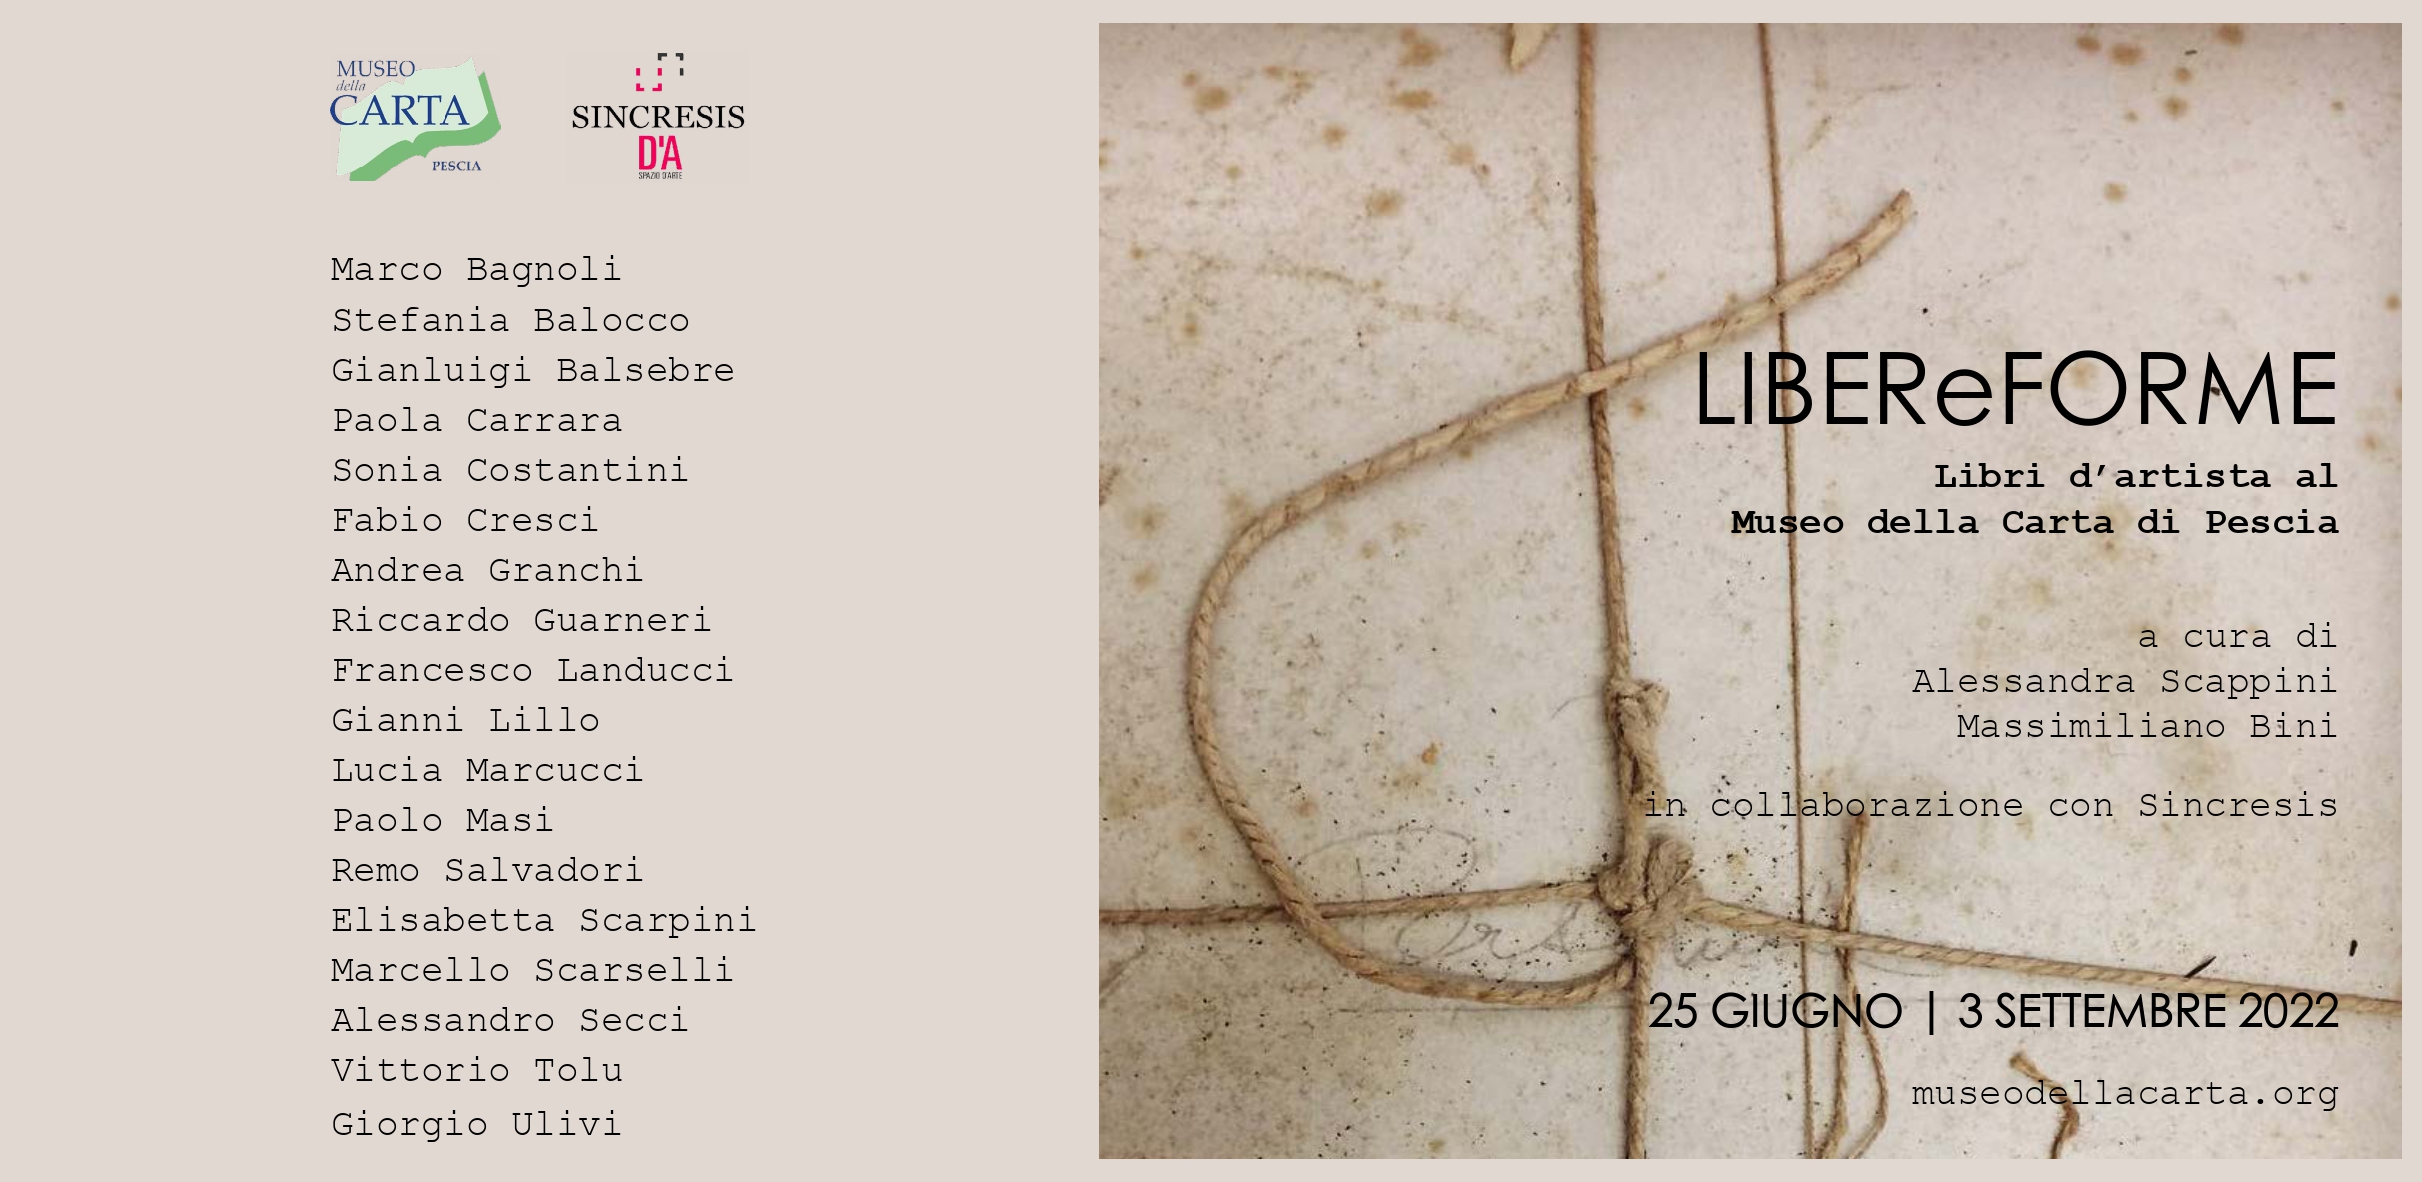 Libereforme Libri D'artista Al Museo Della Carta Di Pescia